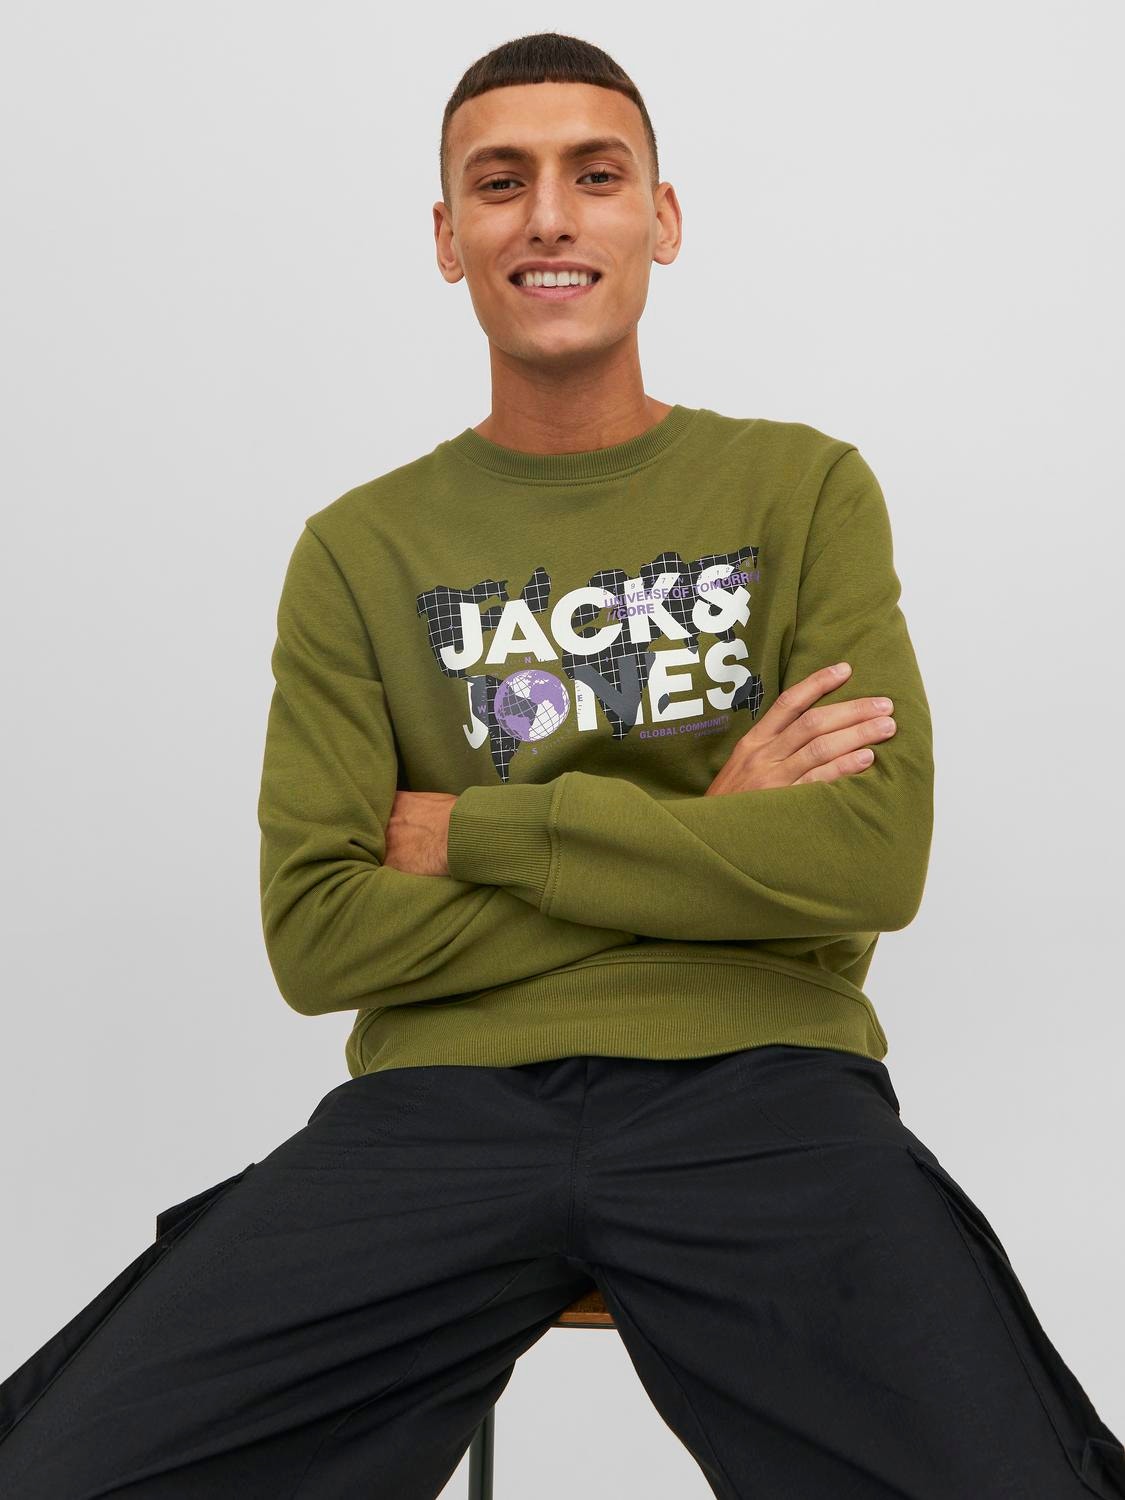 Jack & Jones Logo Crew neck Sweatshirt -Olive Branch - 12240211